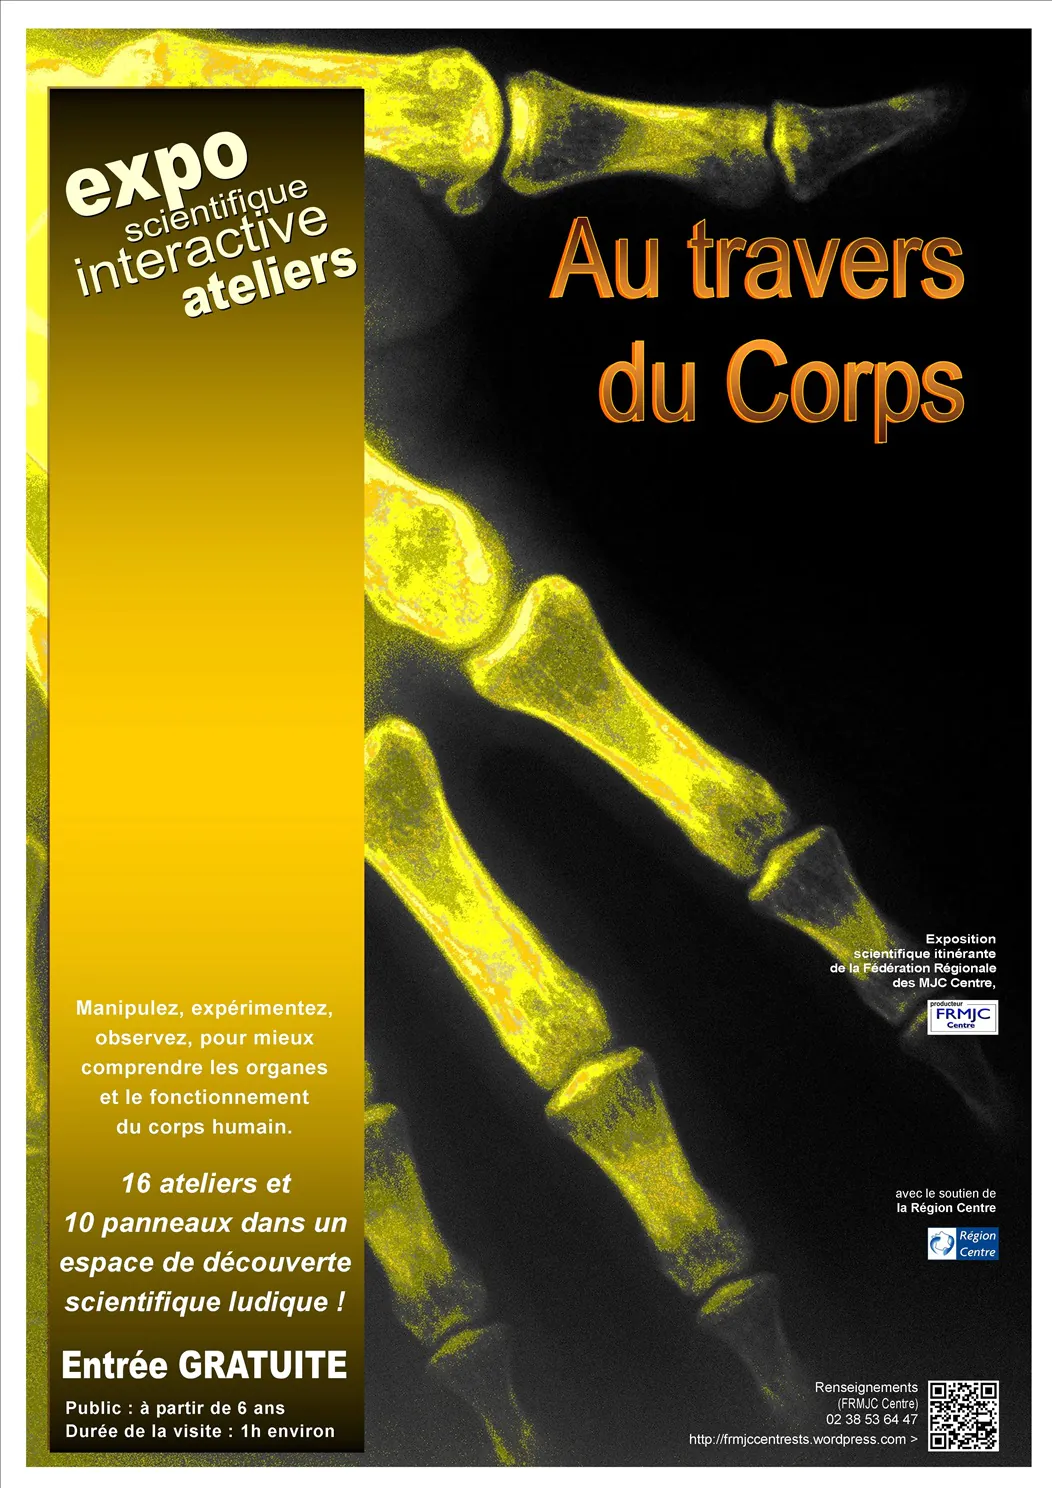 Exposition "Au Travers du Corps" (FRMJC)